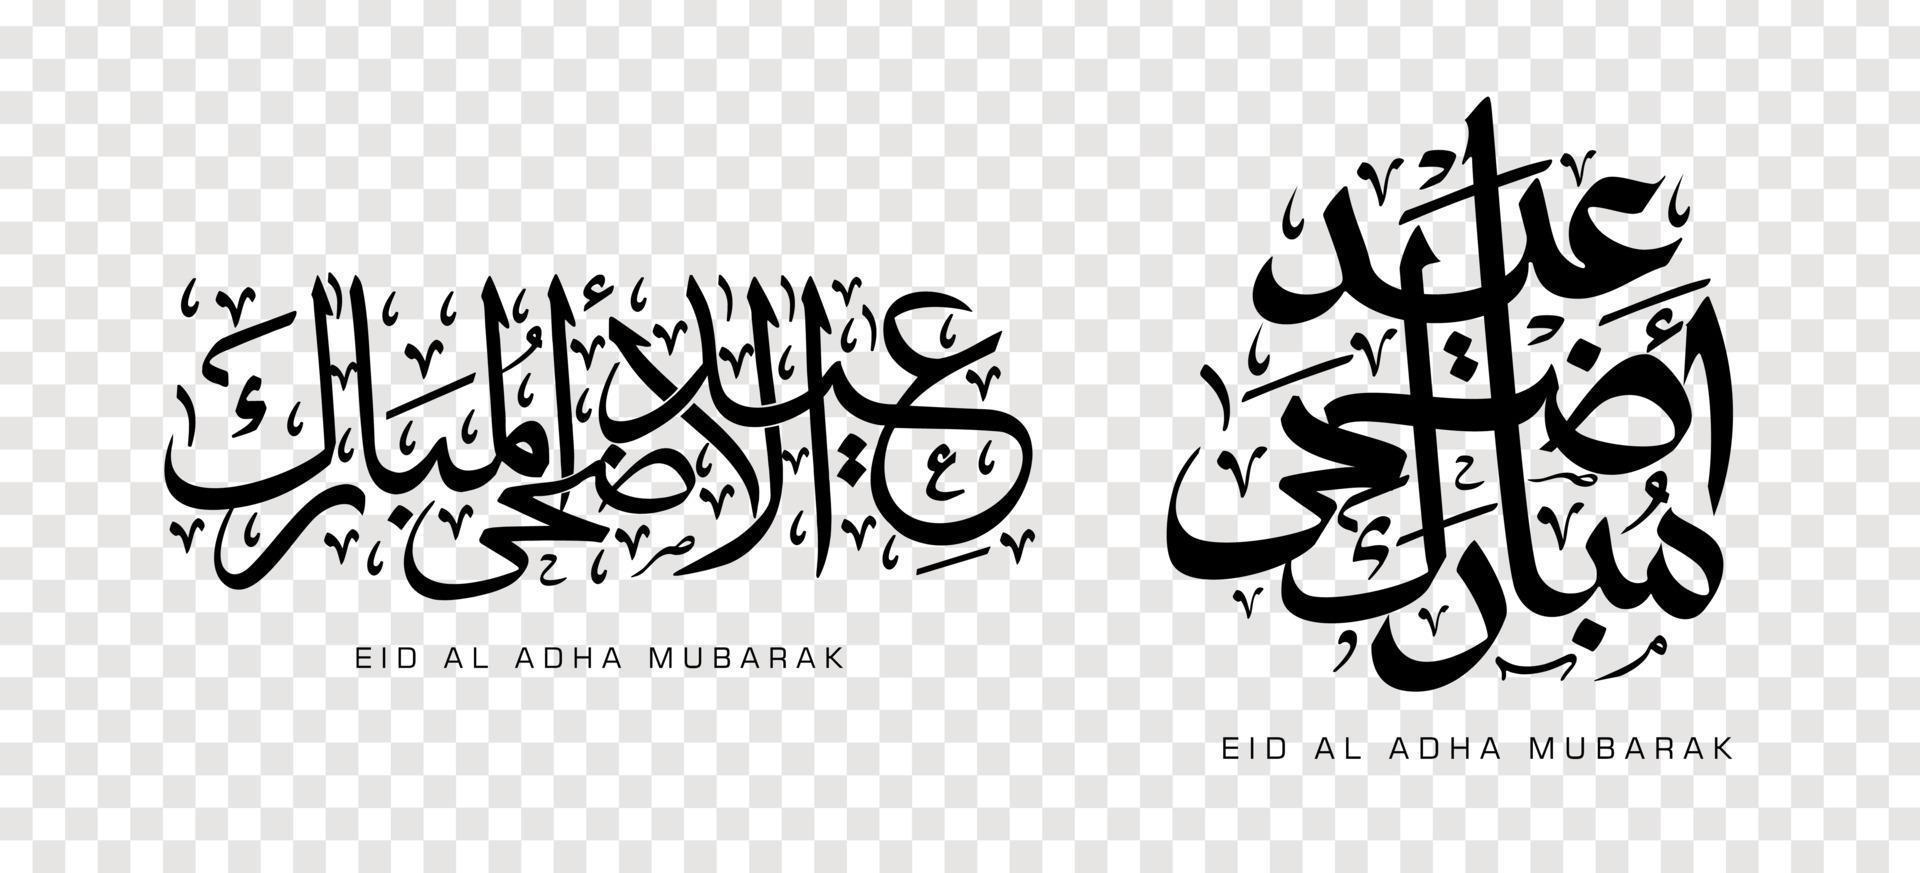 ensemble d'eid adha mubarak en calligraphie arabe, élément de conception. illustration vectorielle vecteur